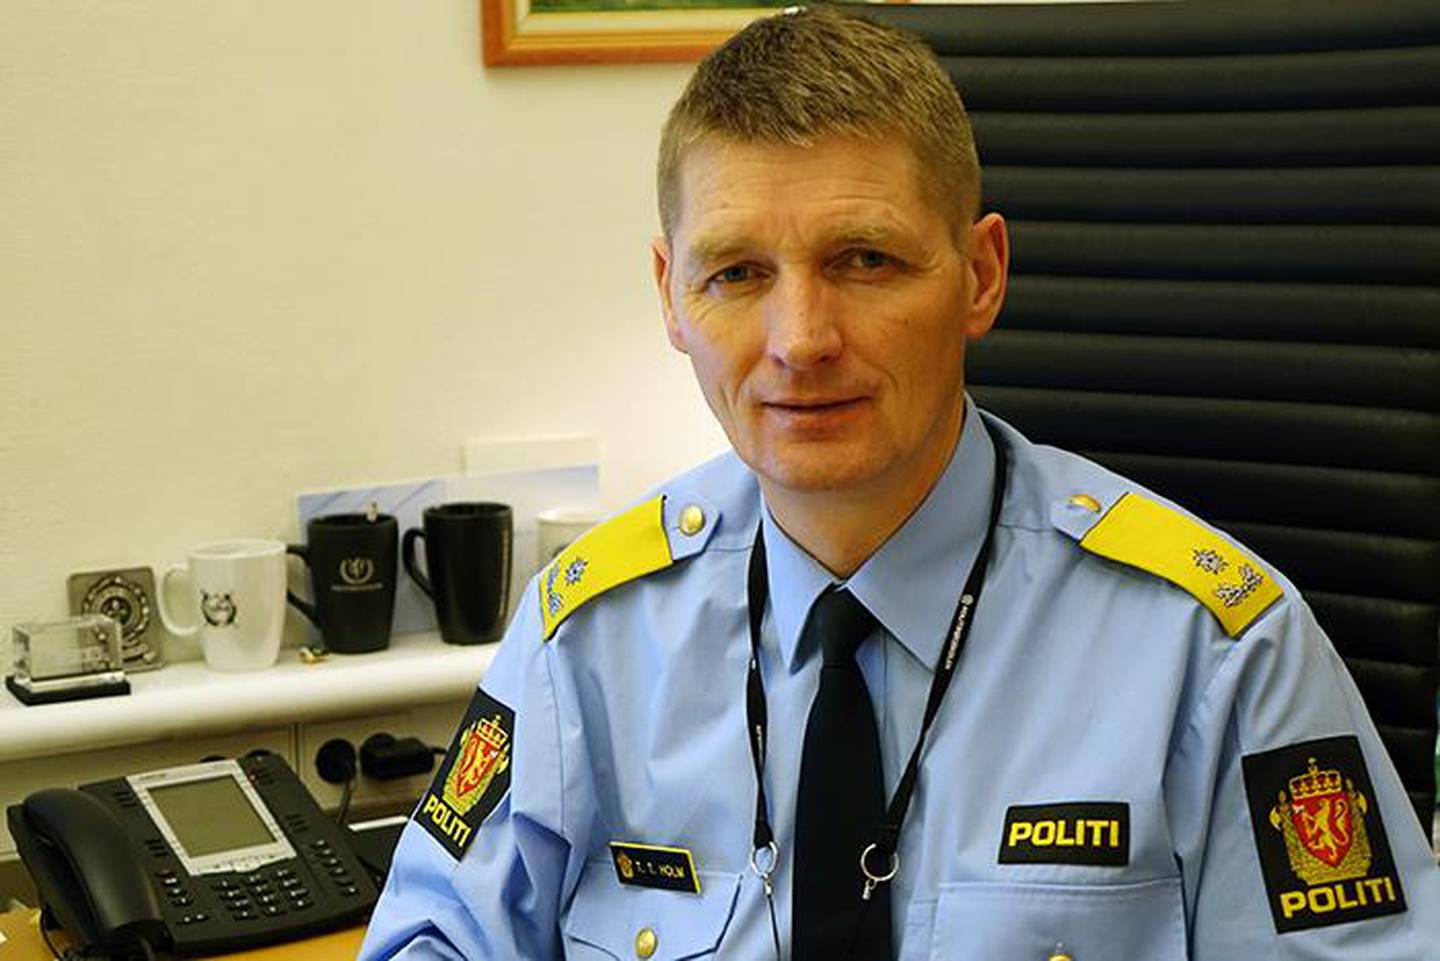 UENIG: Tor Tanke Holm er assisterende rektor ved Politihøgskolen. Han er uenig i at skolen diskriminerer.